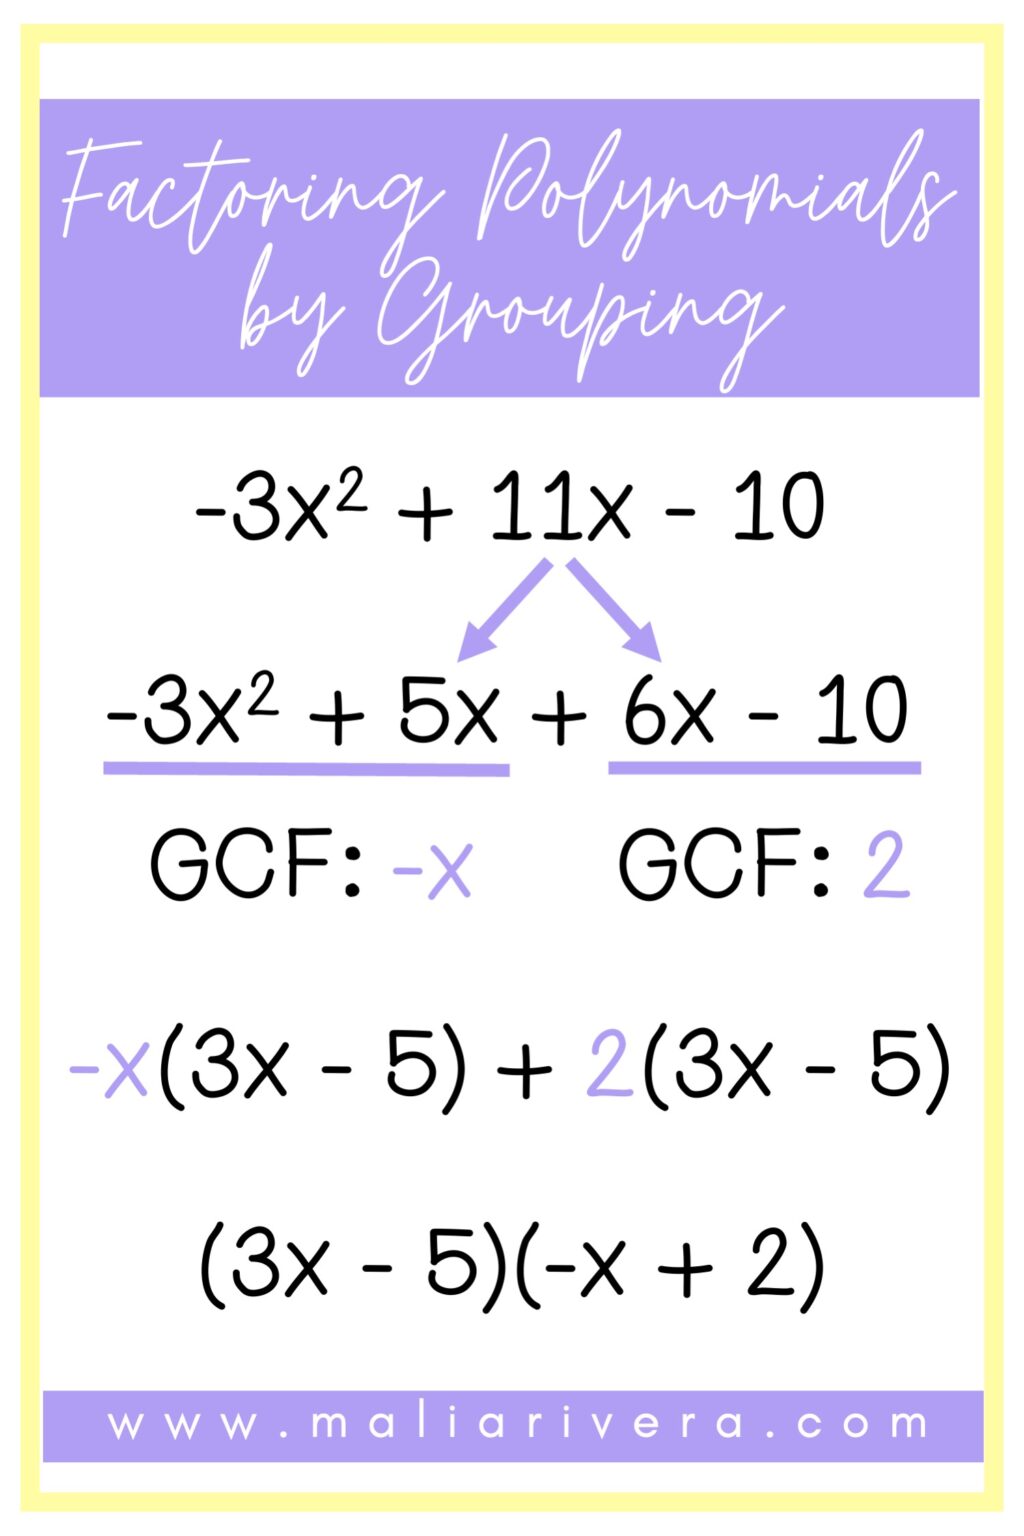 factoring polynomials assignment